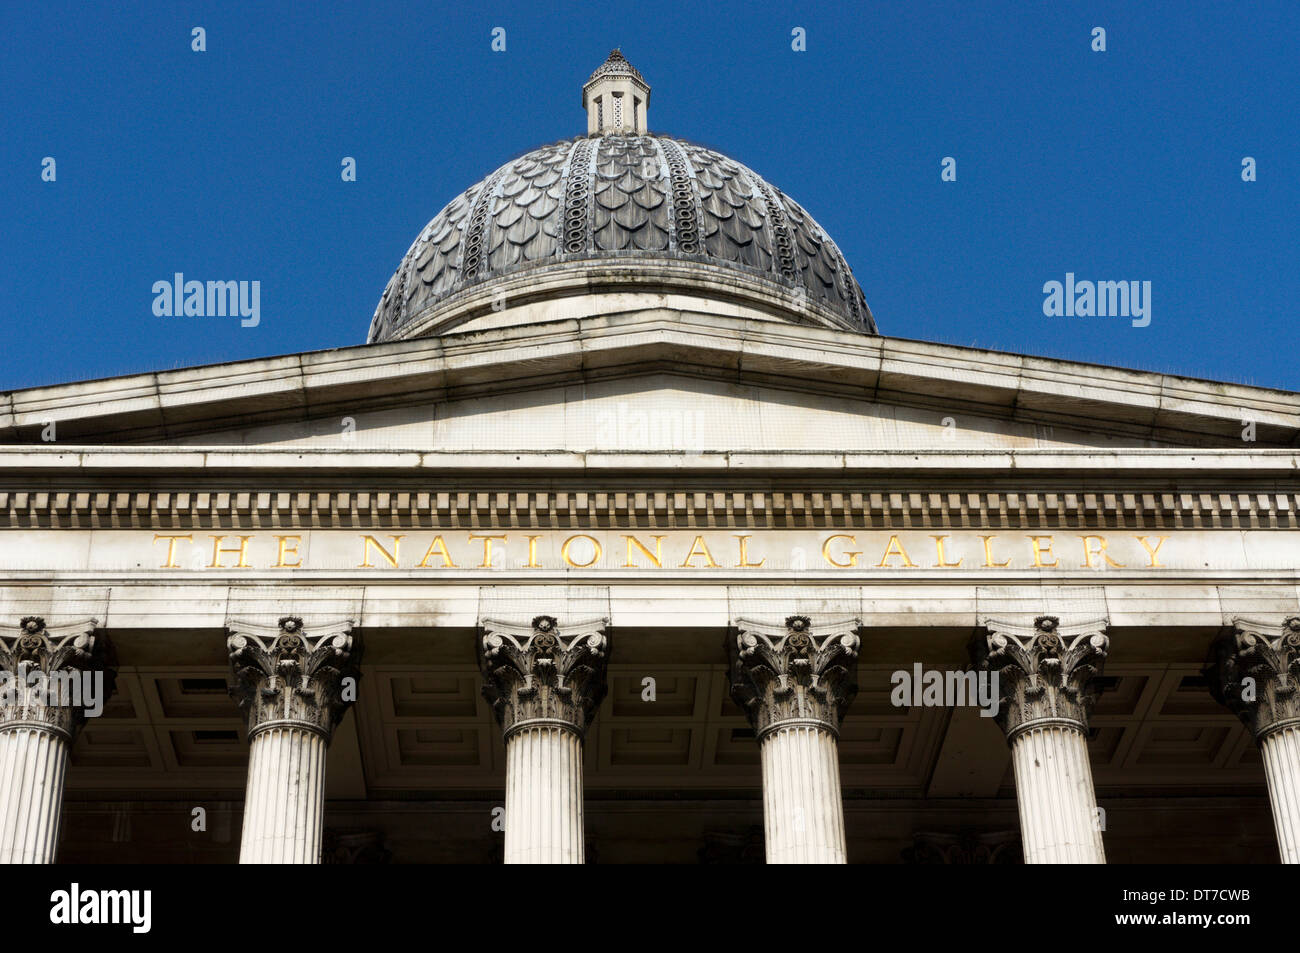 El nombre de la Galería Nacional tallado por debajo del frontón en la parte frontal del edificio, Londres, Inglaterra. Foto de stock